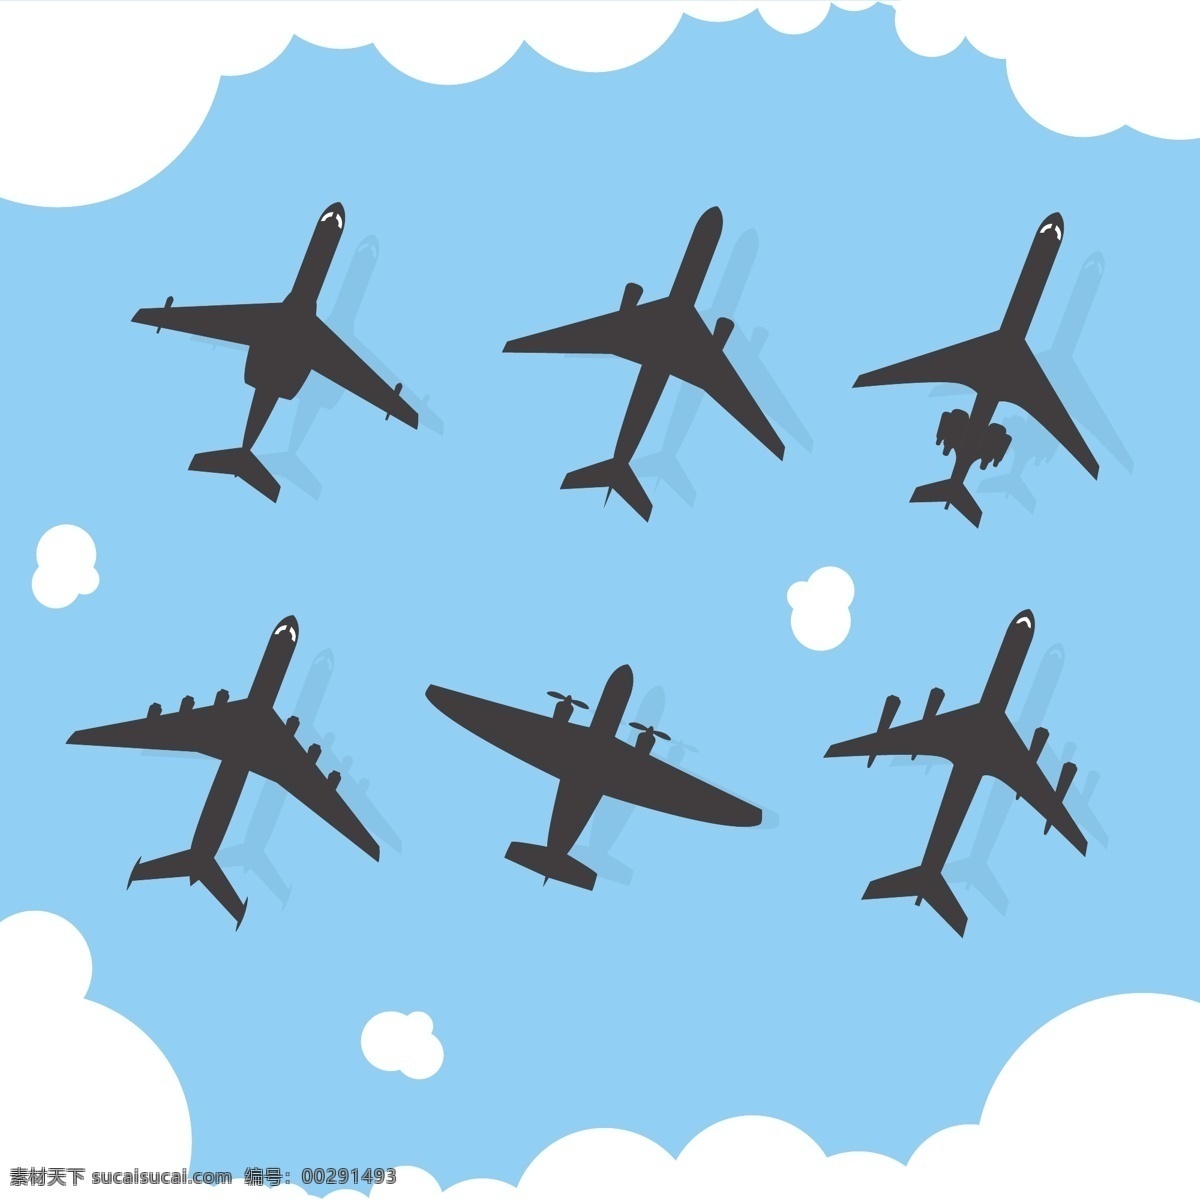 款 创意 飞机 剪影 矢量 客机 战机 航班 云朵 飞行 标志图标 其他图标